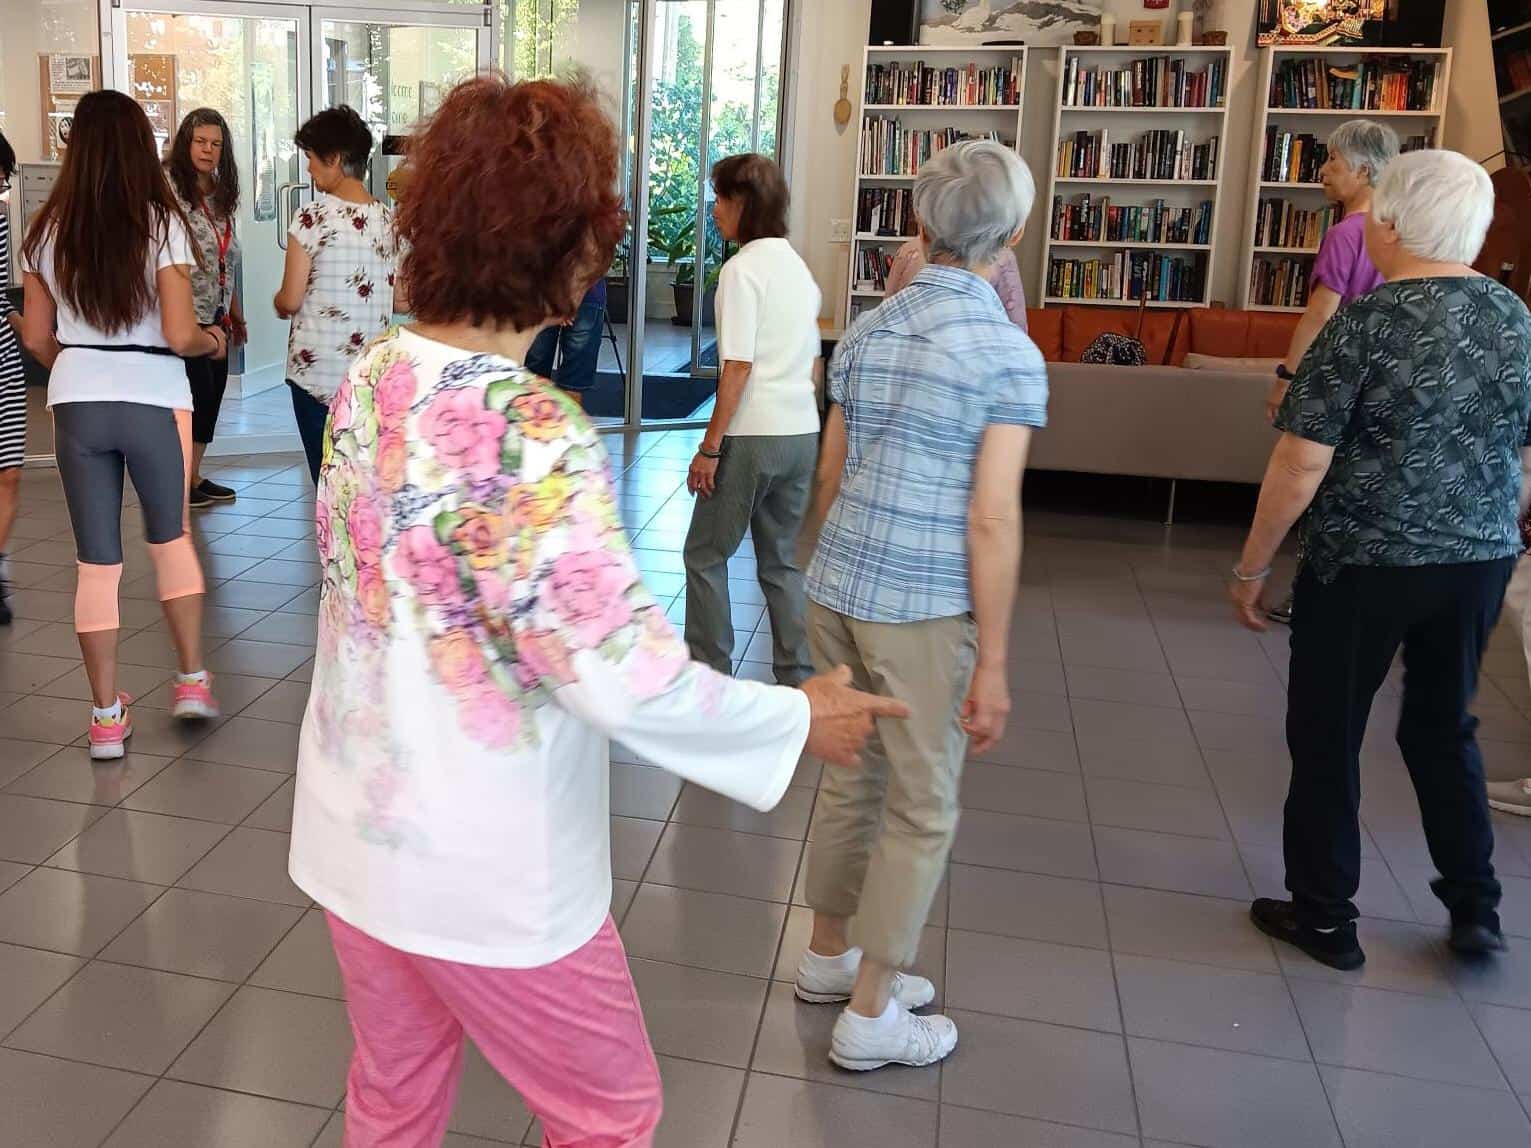 Seniors line dancing